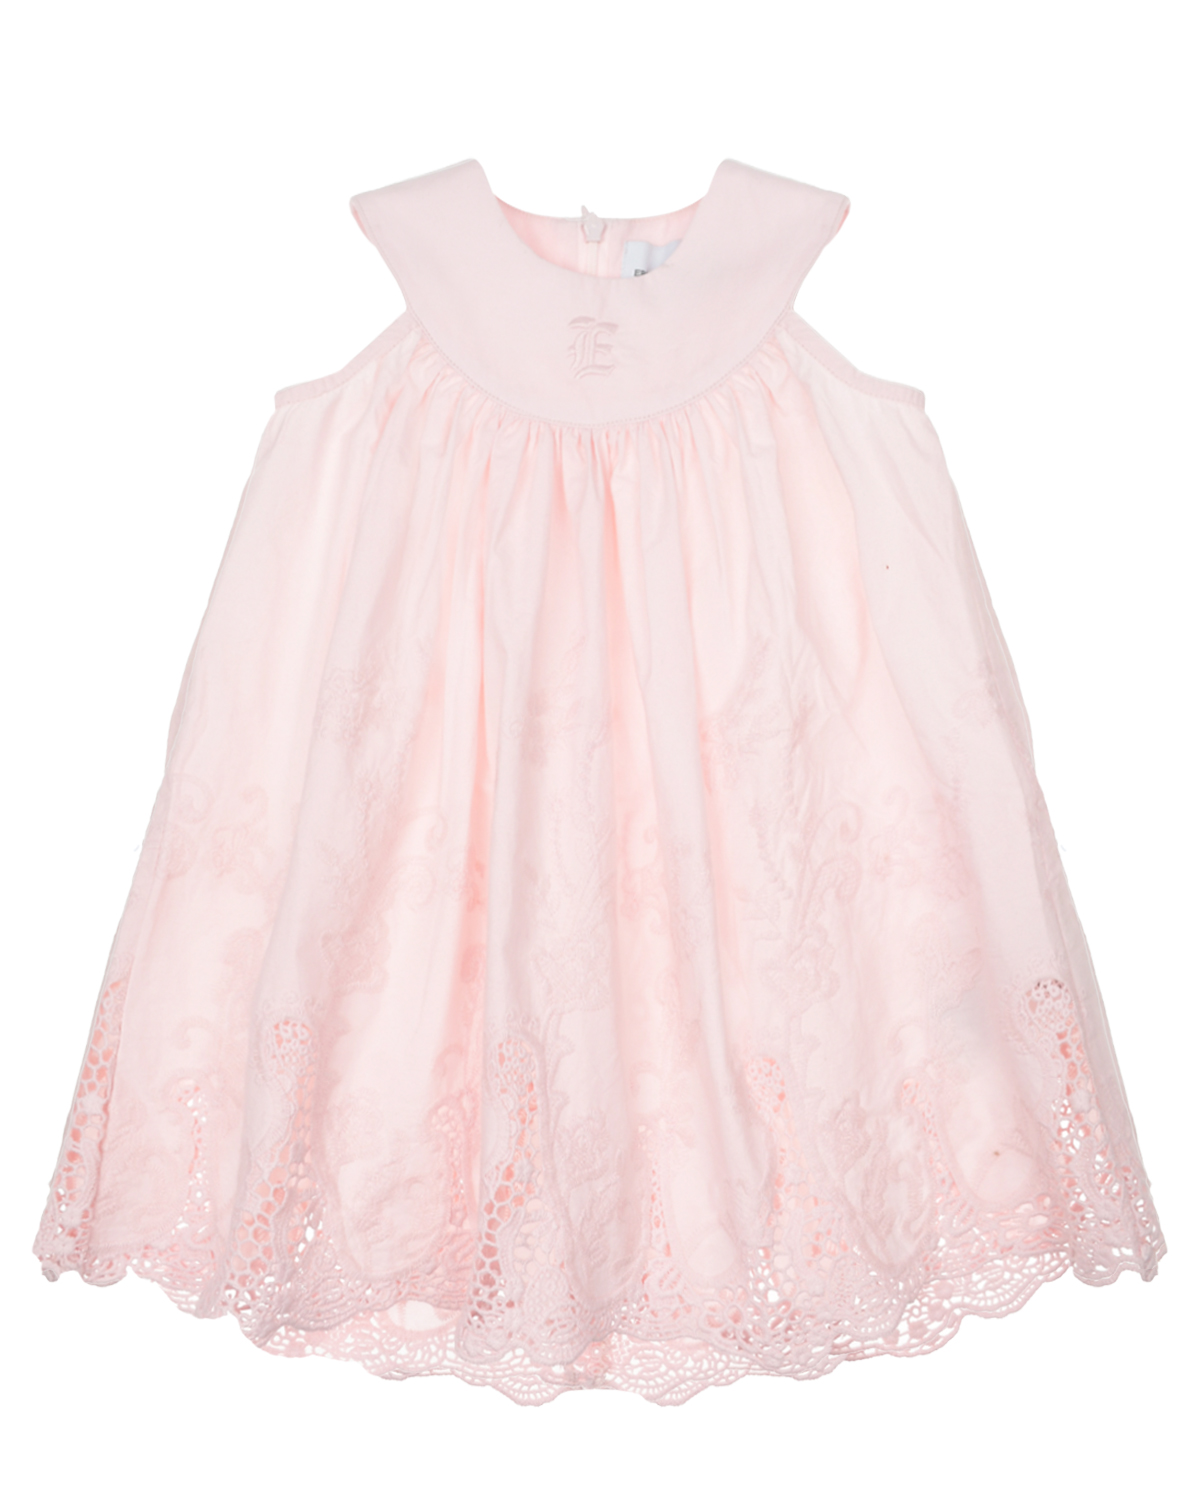 Розовое платье с ажурной вышивкой Ermanno Scervino платье для собак кулирка l дс 32 ош 38 42 ог 44 48 розовое с серыми полосками